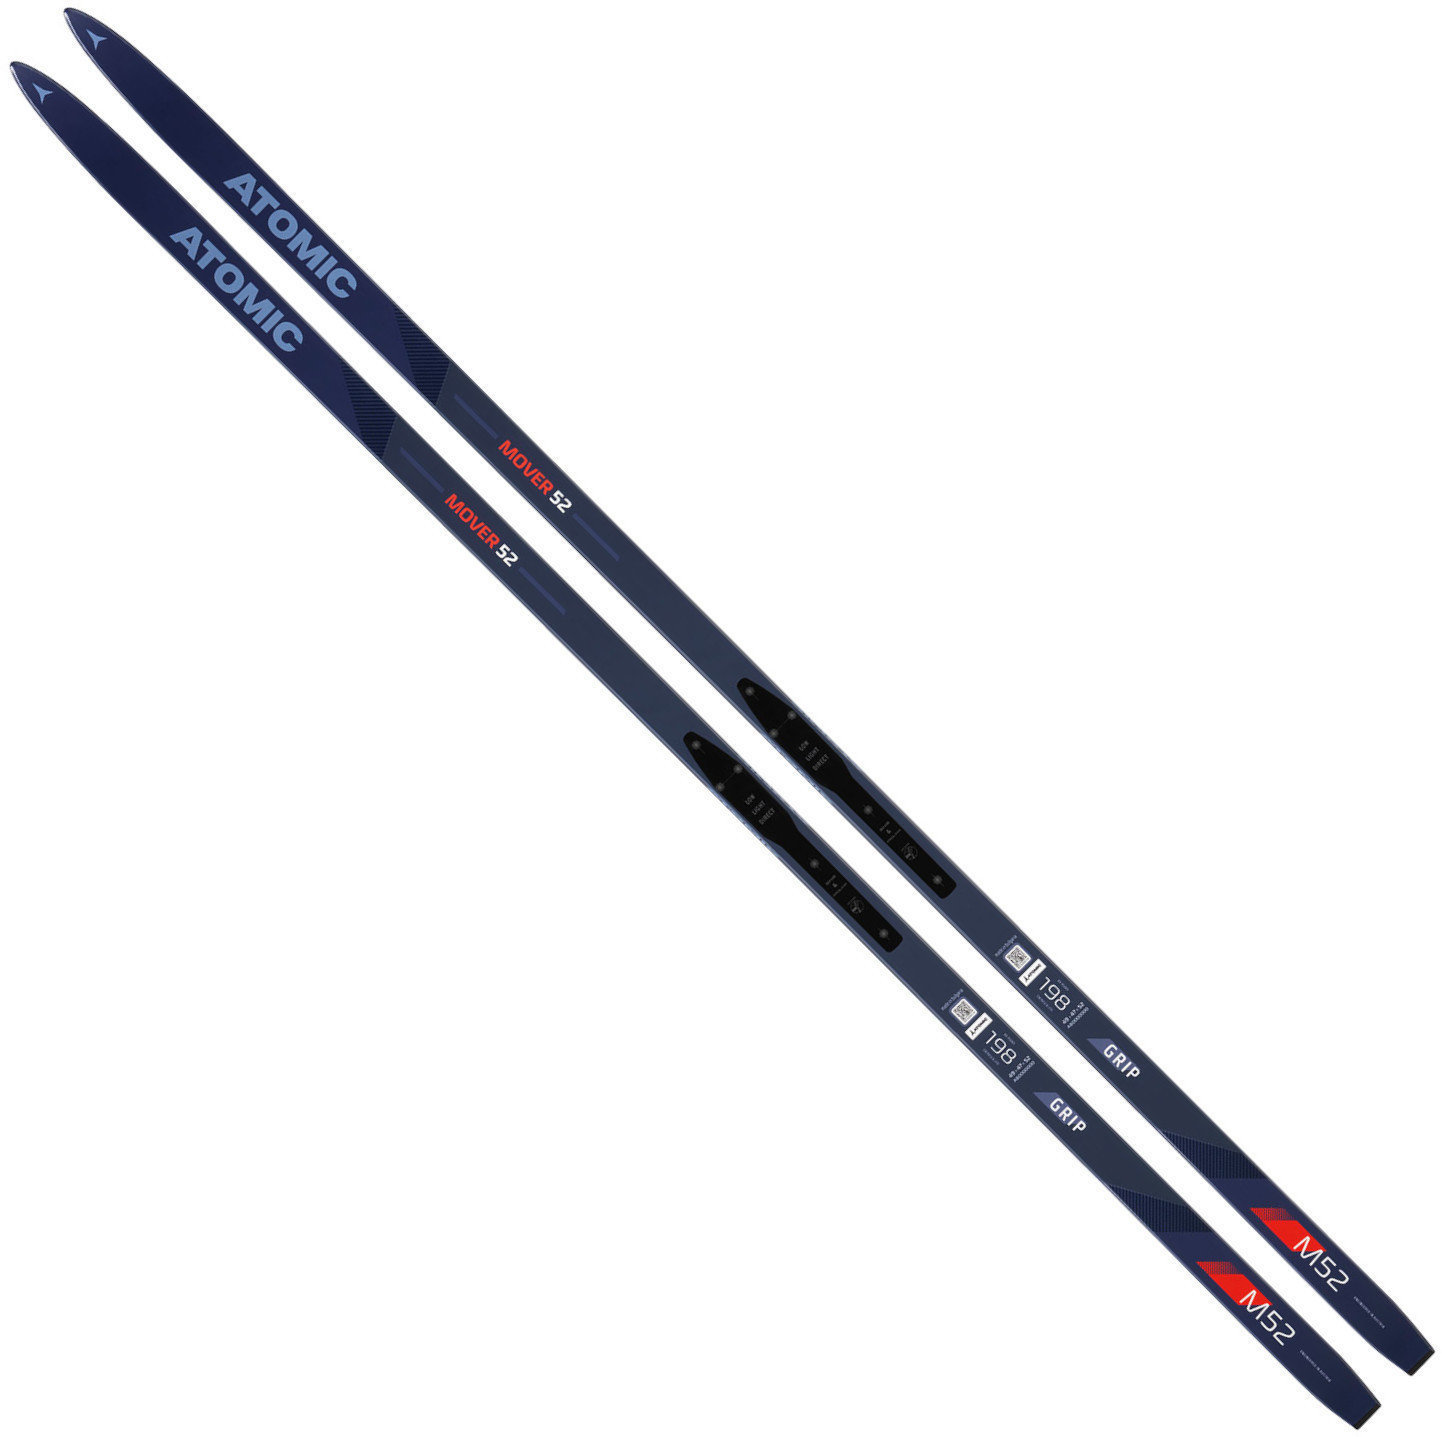 Běžecké lyže Atomic Mover 52 Grip Blue/Light Blue/Red 191 cm 18/19